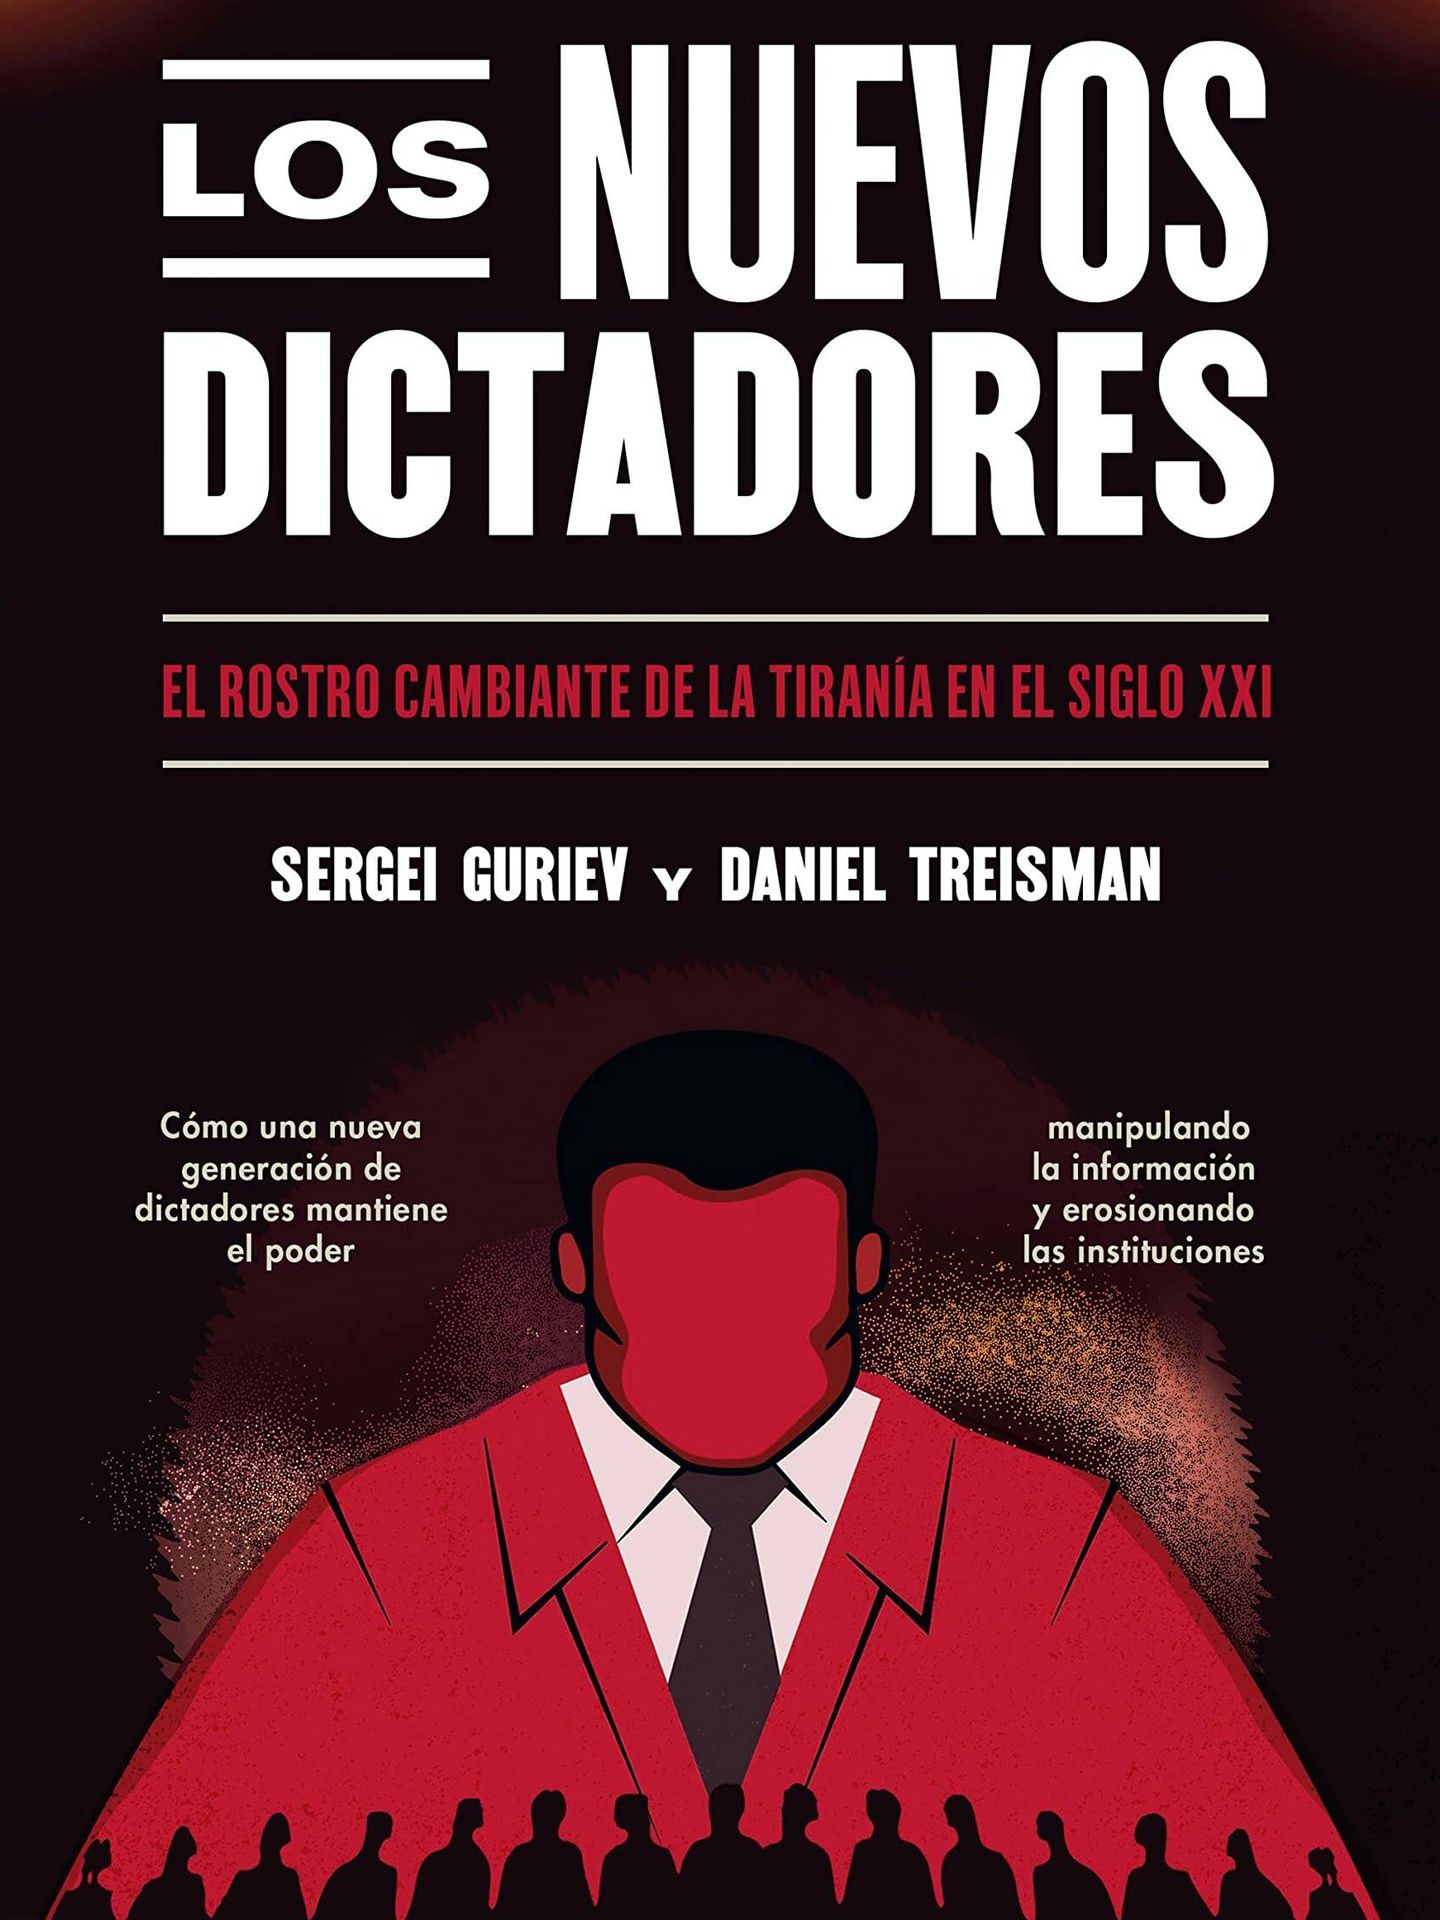 Portada de 'Los nuevos dictadores', el ensayo de Sergei Guriev y Daniel Treisman.